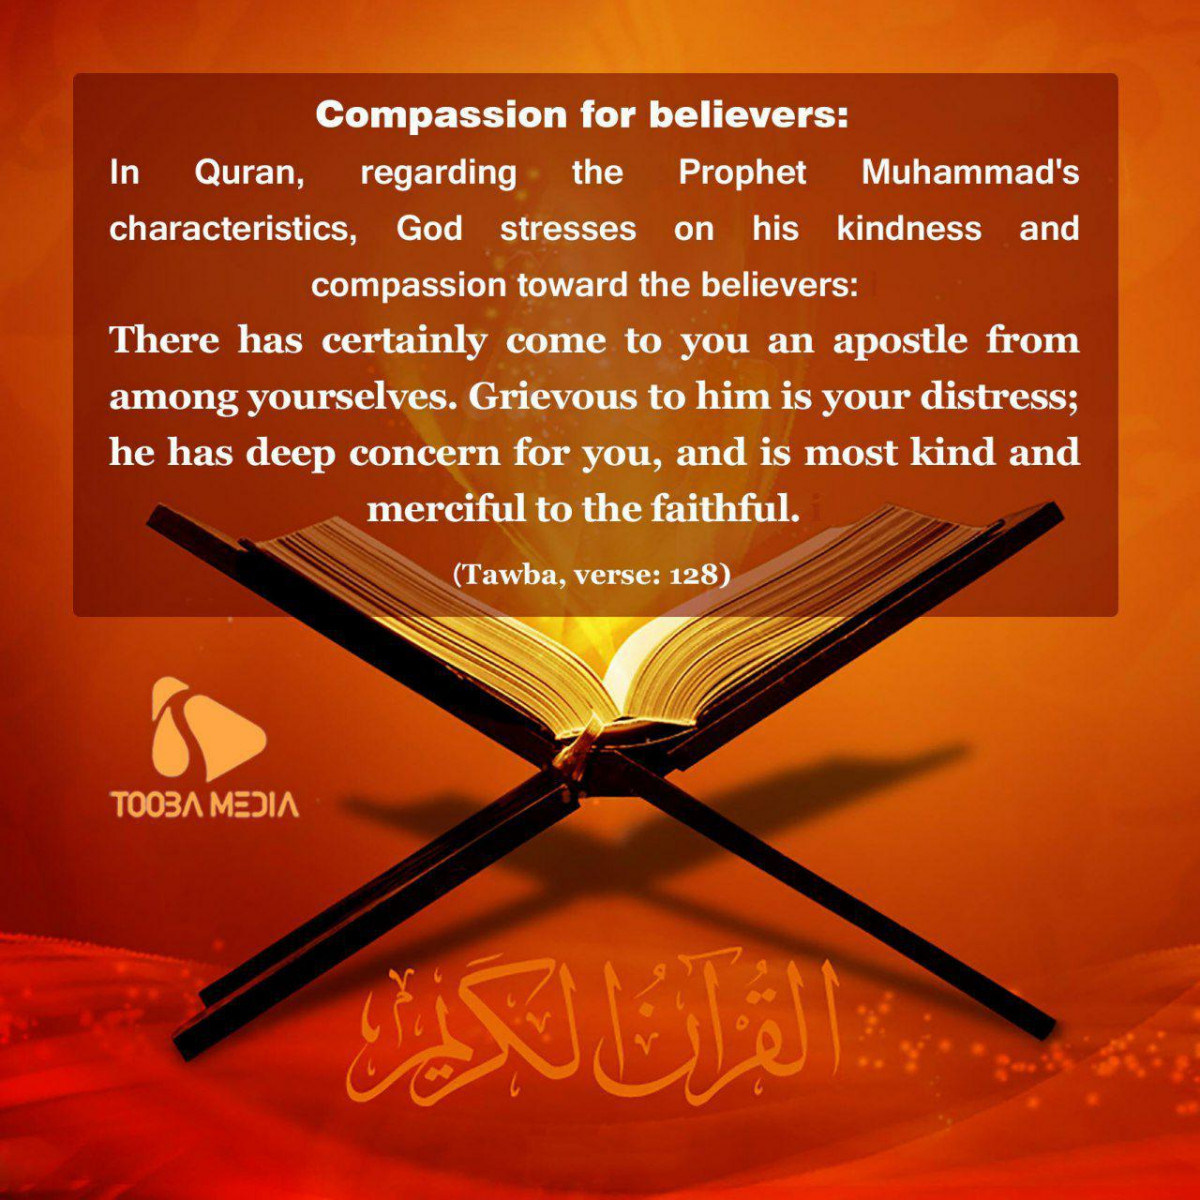 Compassion for believers: In Quran, regarding the Prophet